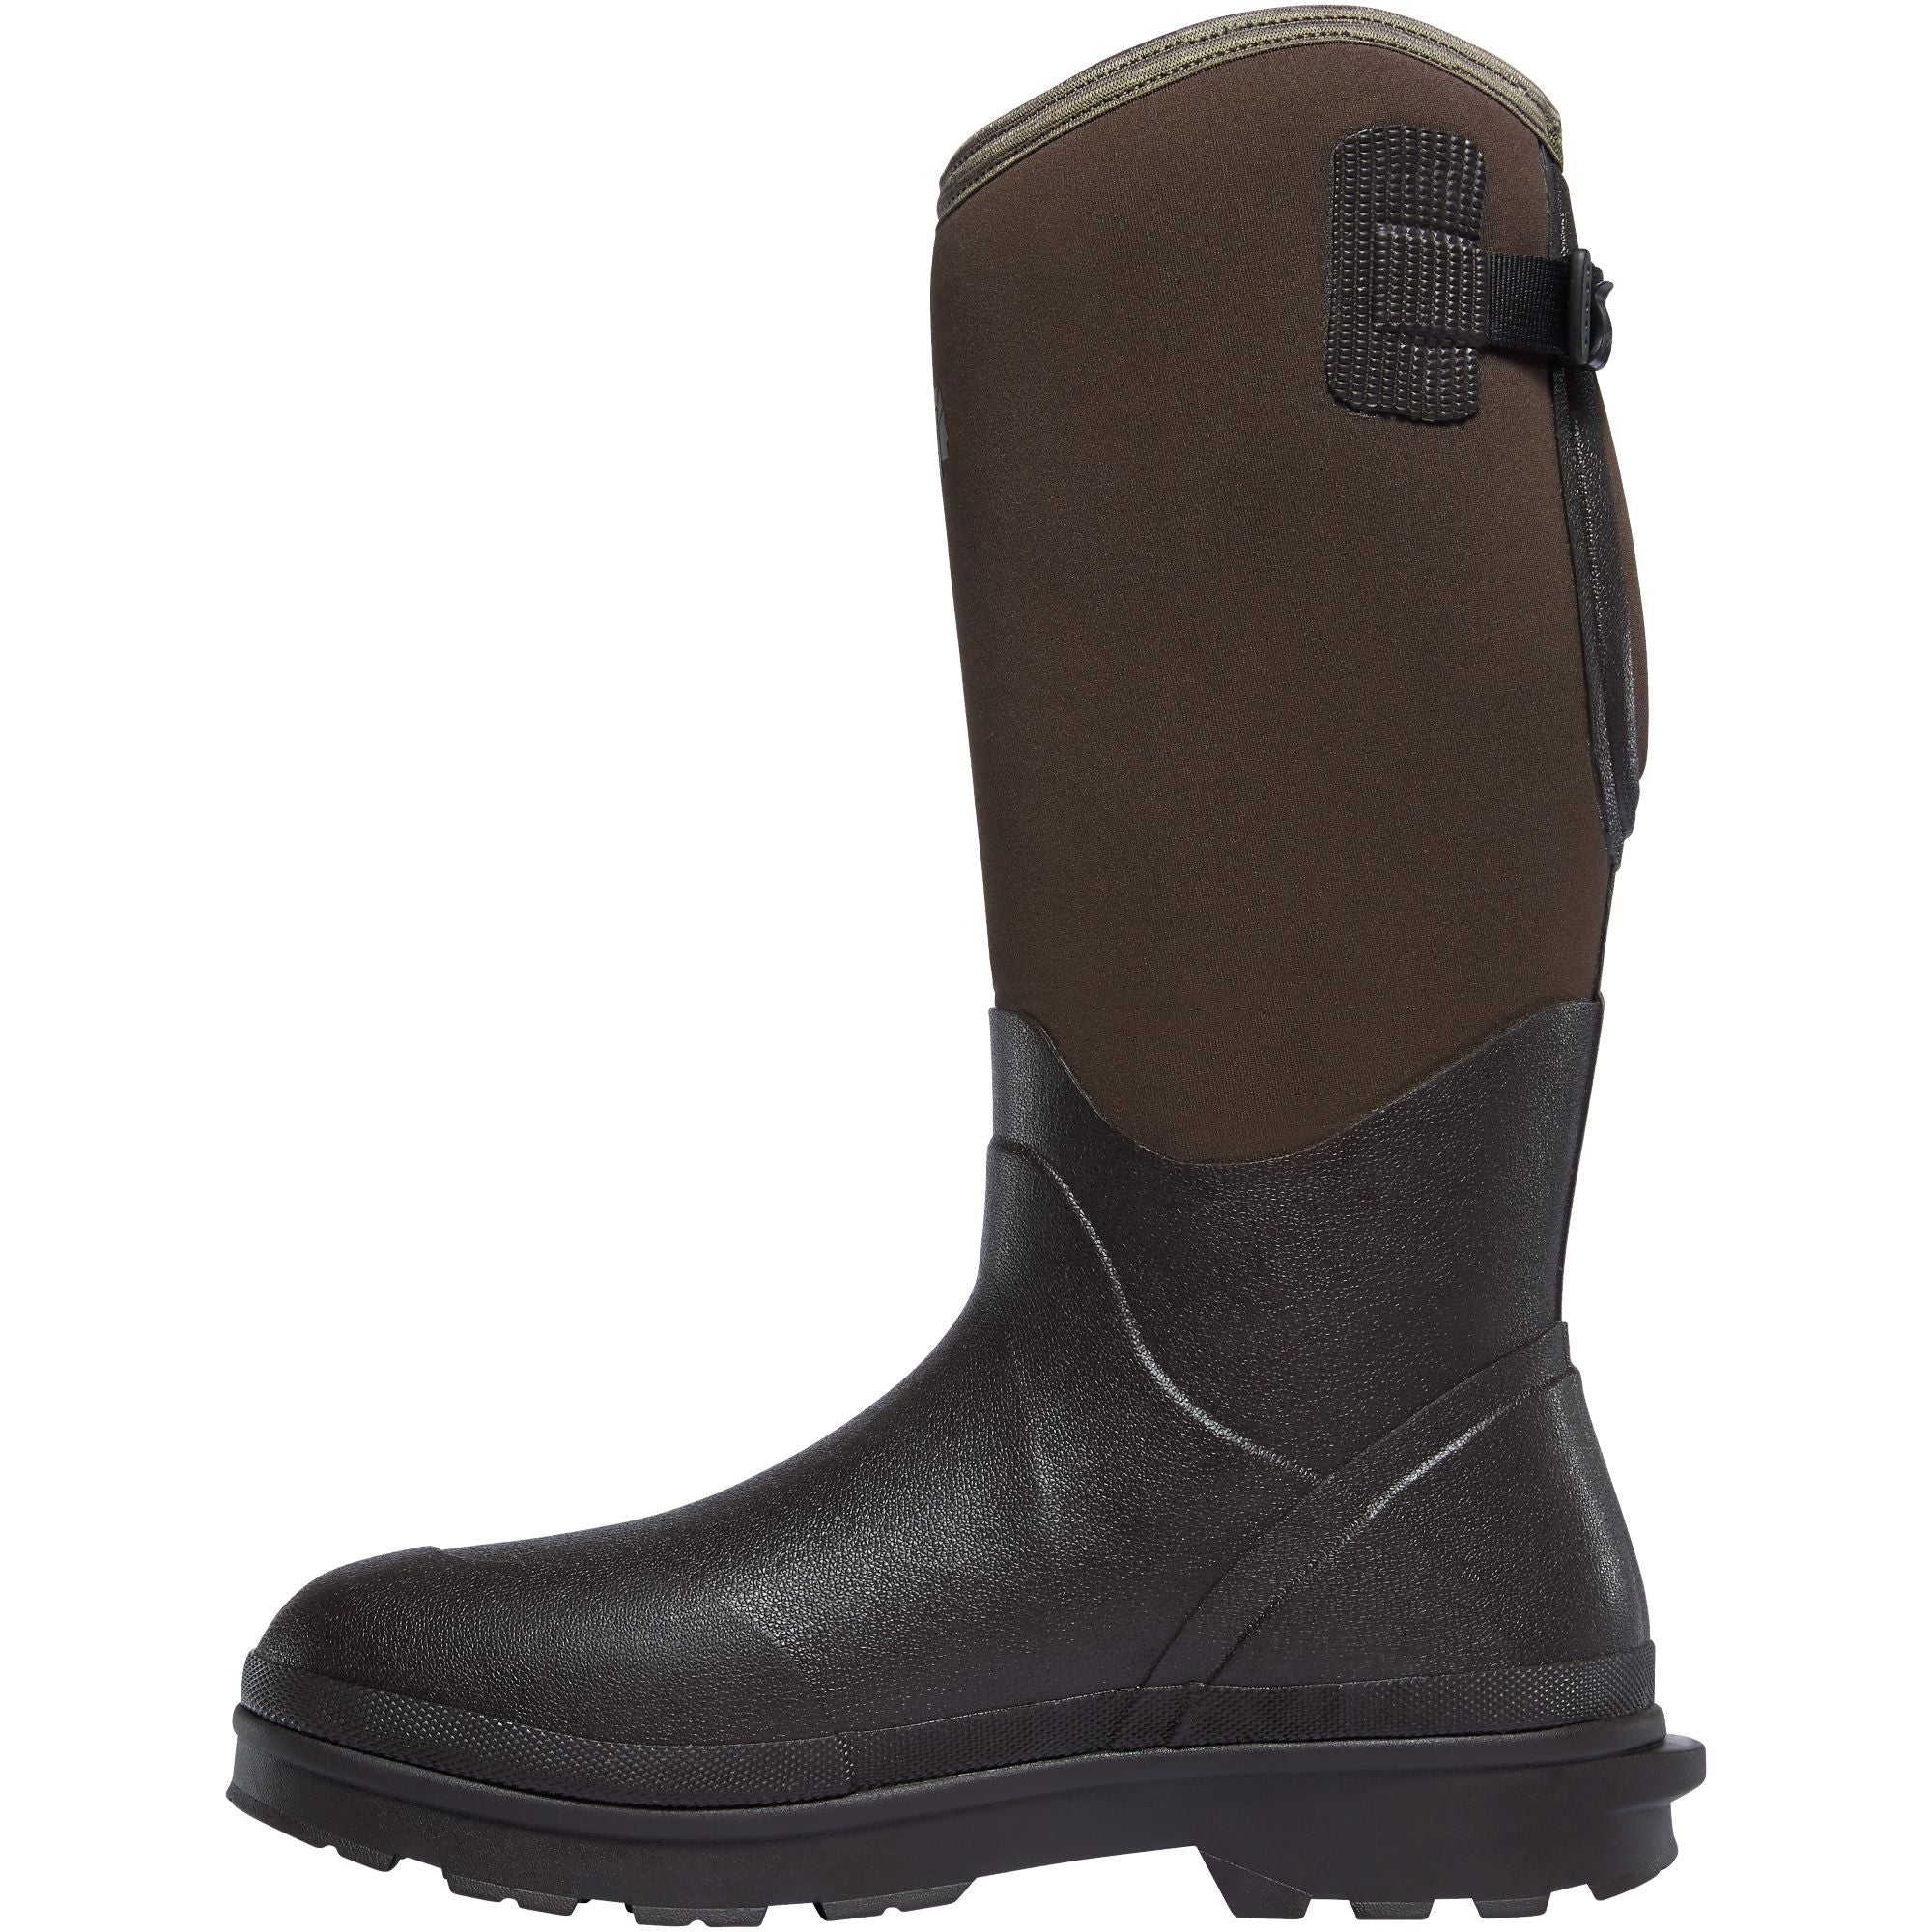 LaCrosse Men's Alpha Range 14" Ins Rubber Work Boot - Brown - 602248  - Overlook Boots